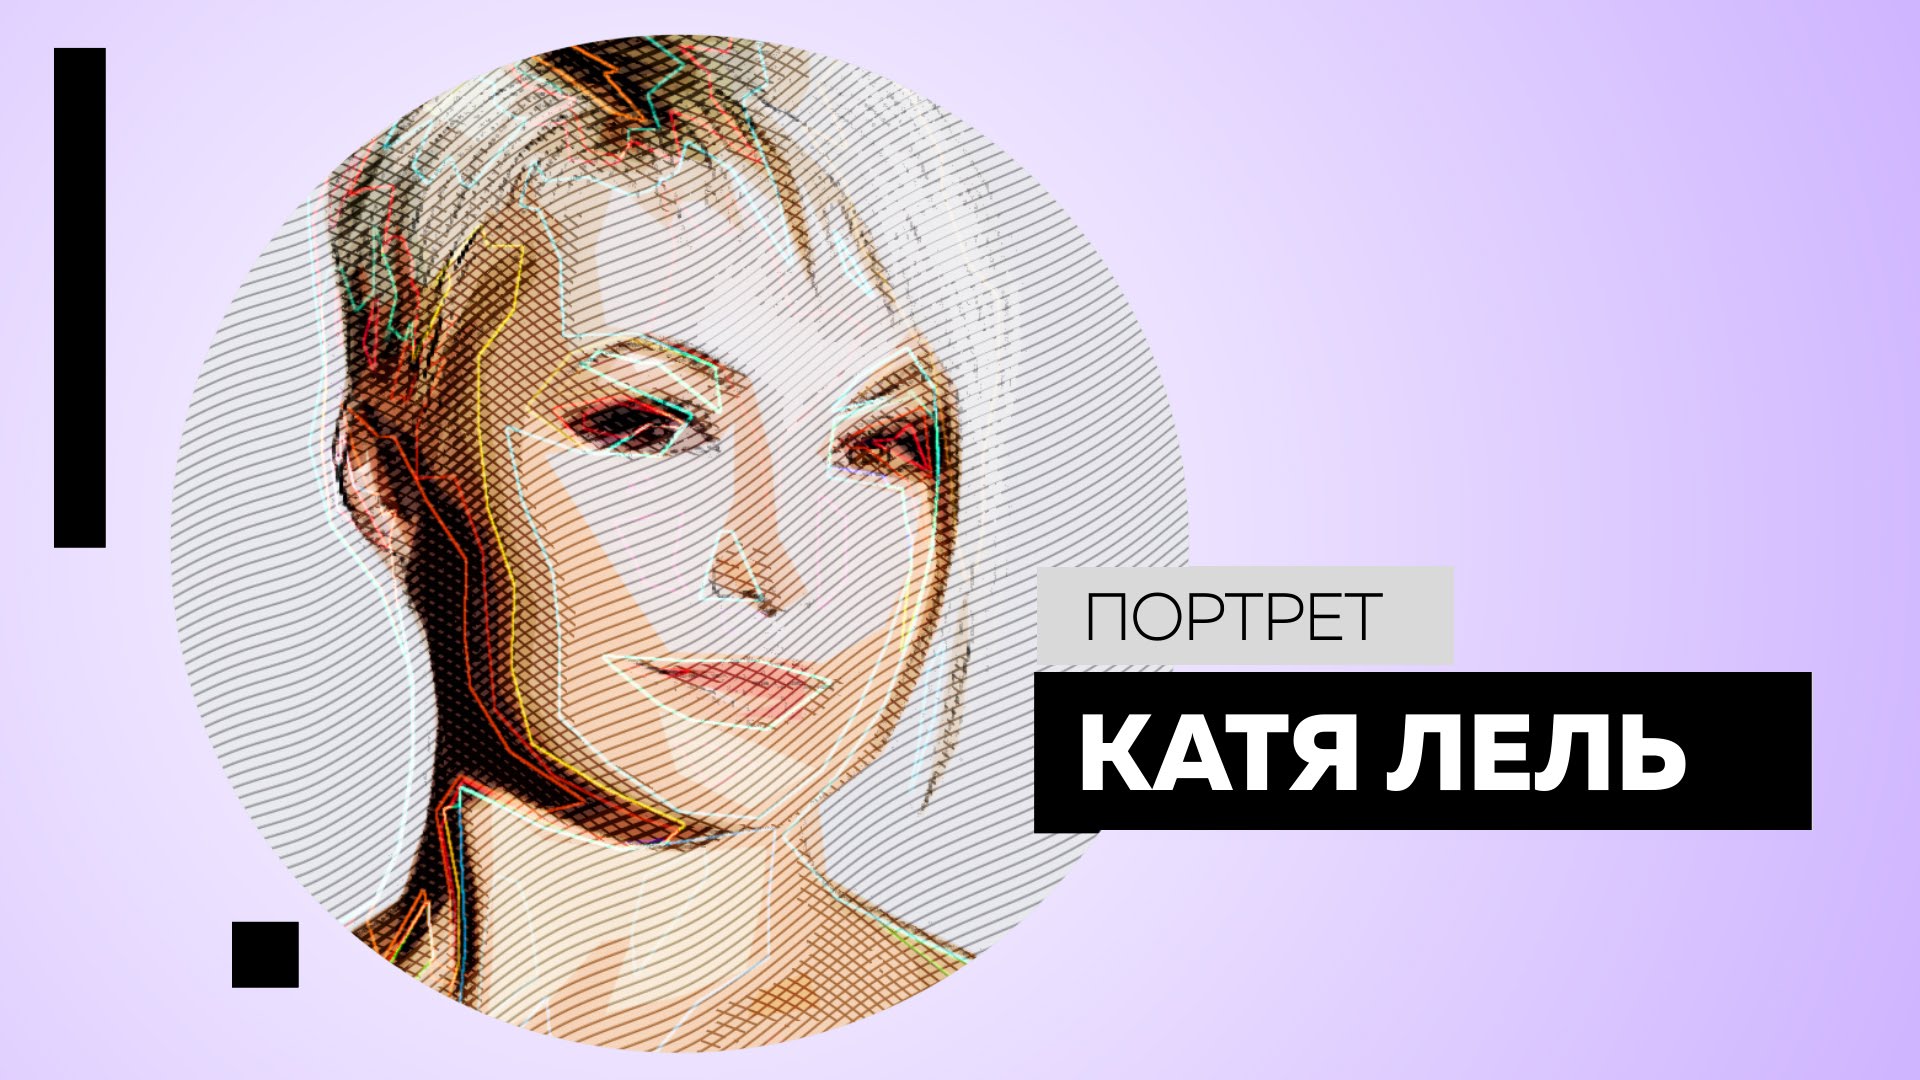 ВИДЕО: Катя Лель. Портрет Dukascopy TV от 4 апреля